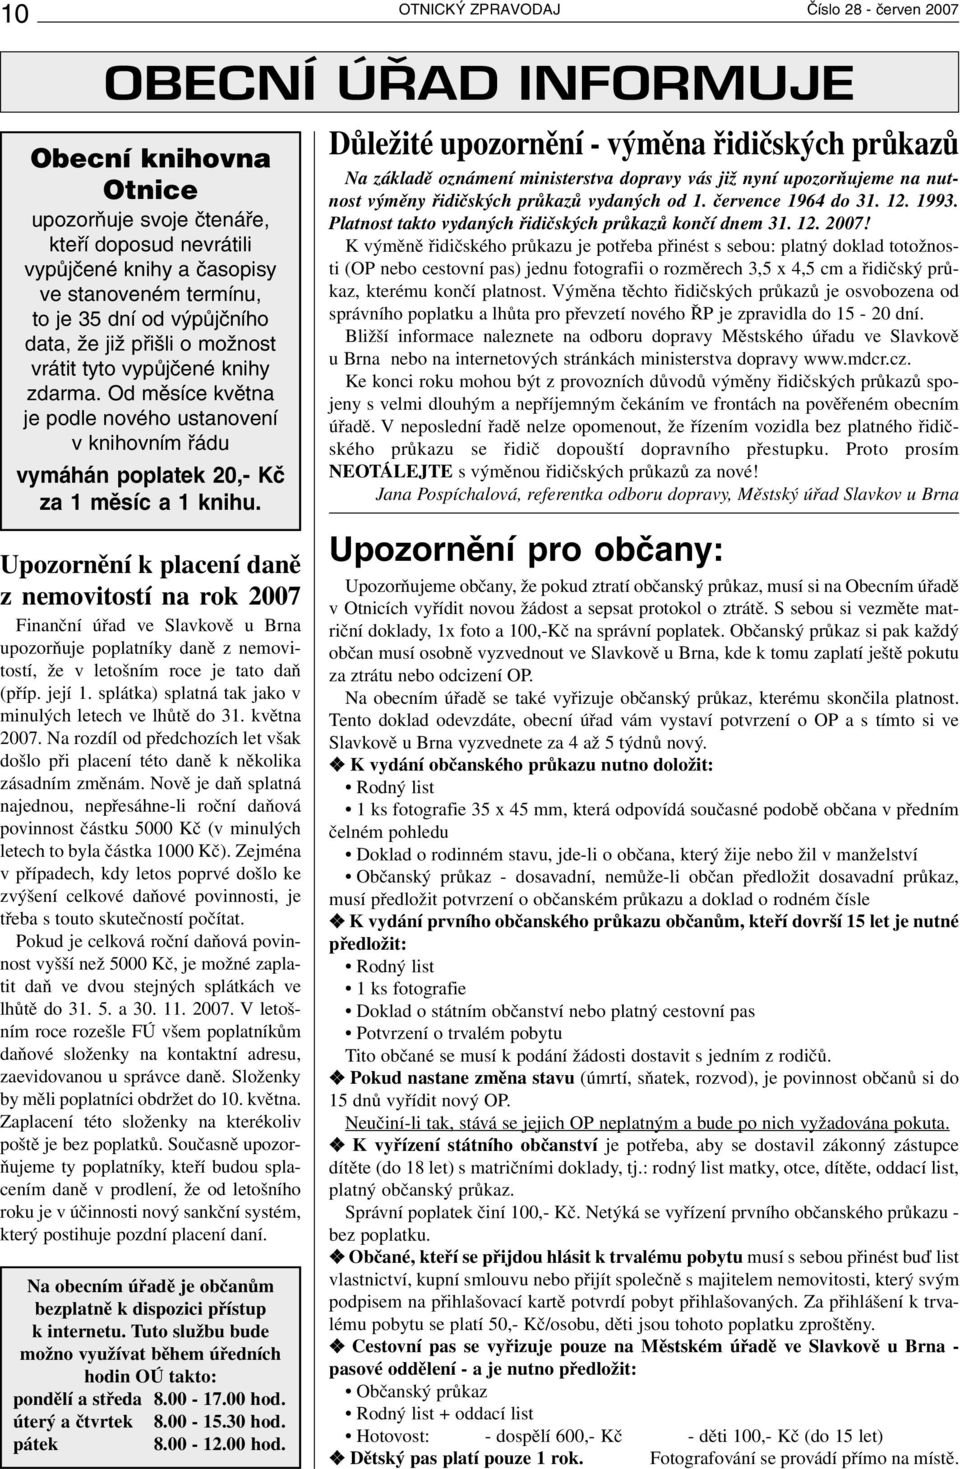 Upozornění k placení daně z nemovitostí na rok 2007 Finanční úřad ve Slavkově u Brna upozorňuje poplatníky daně z nemovitostí, že v letošním roce je tato daň (příp. její 1.